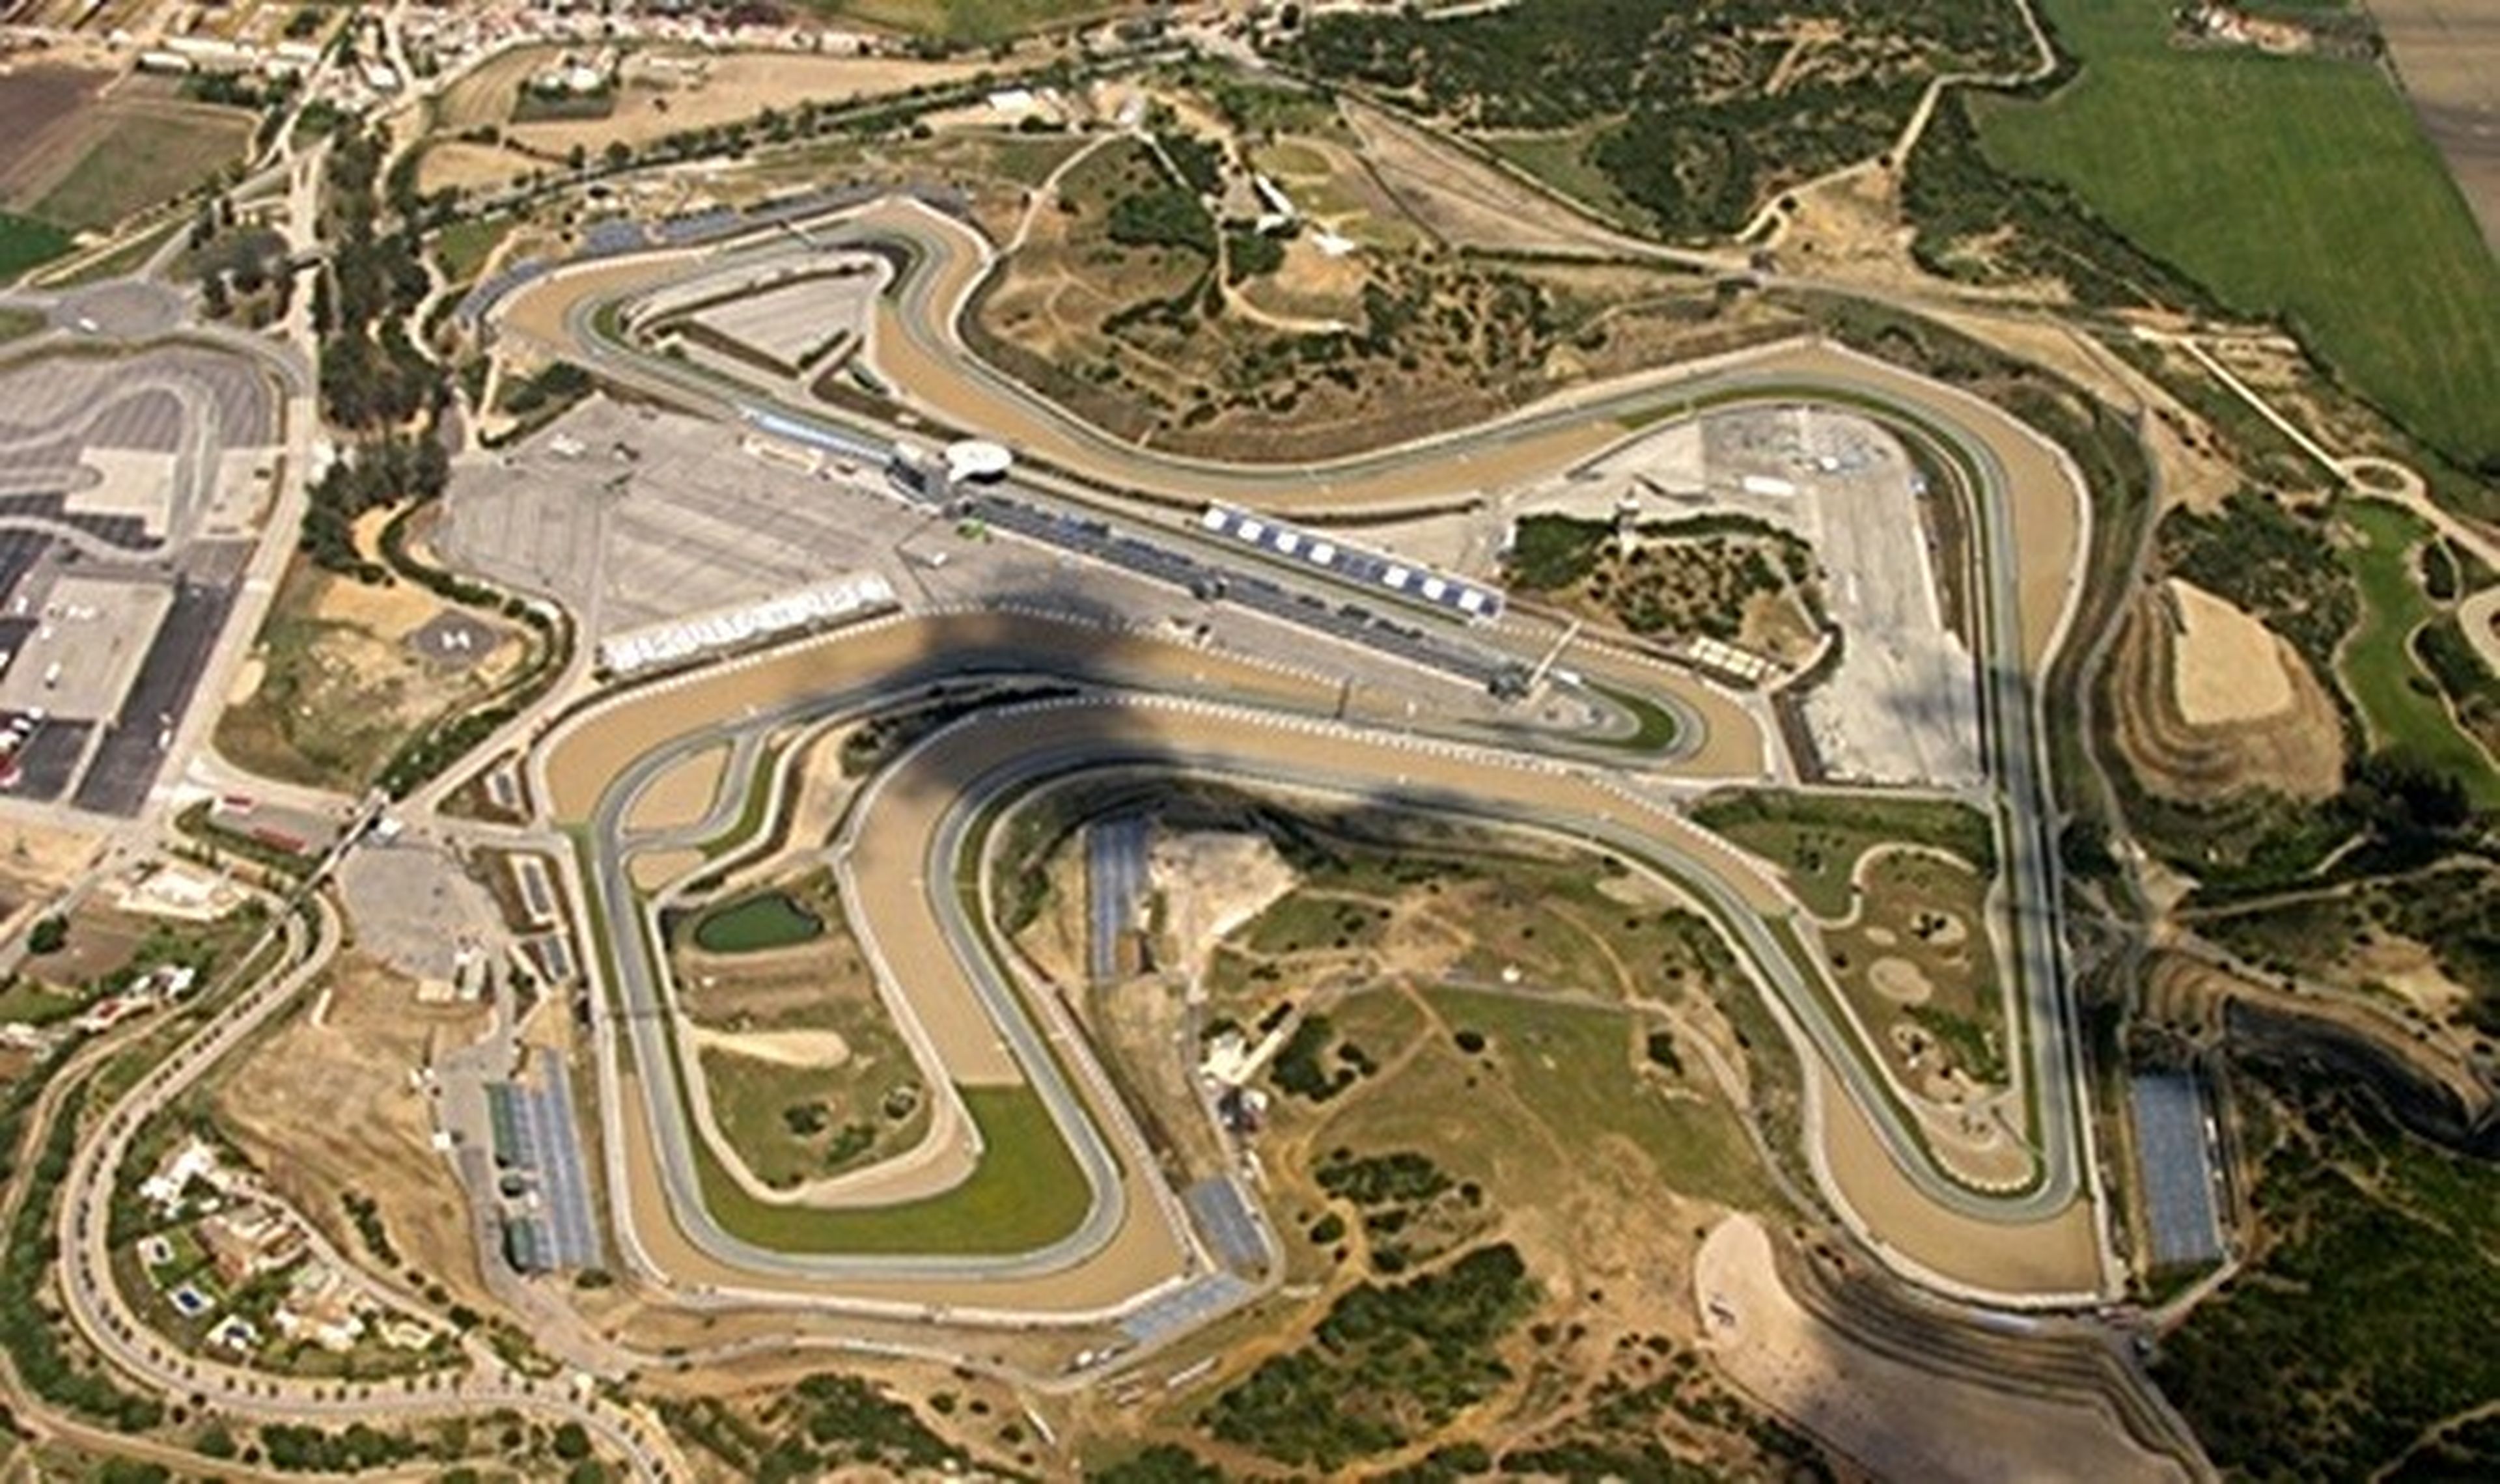 El Circuito de Jerez confirma su presencia en MotoGP 2016